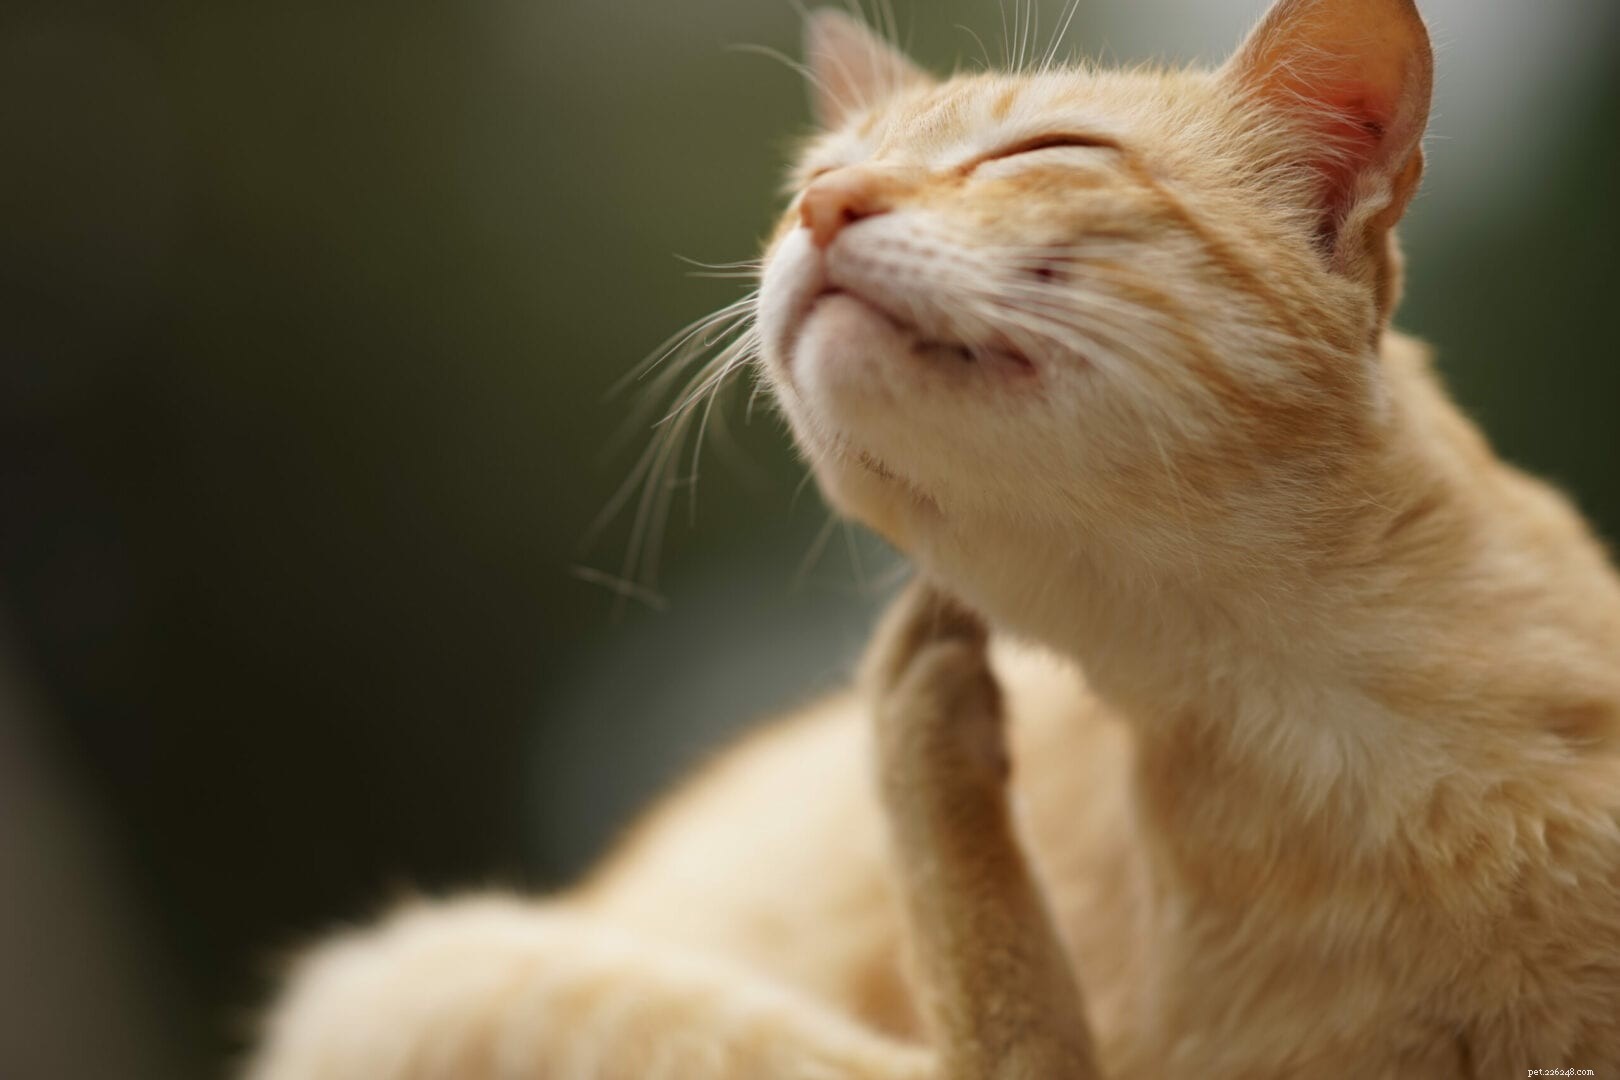 あなたの猫が食物アレルギーを持っているかどうかを見分ける方法 